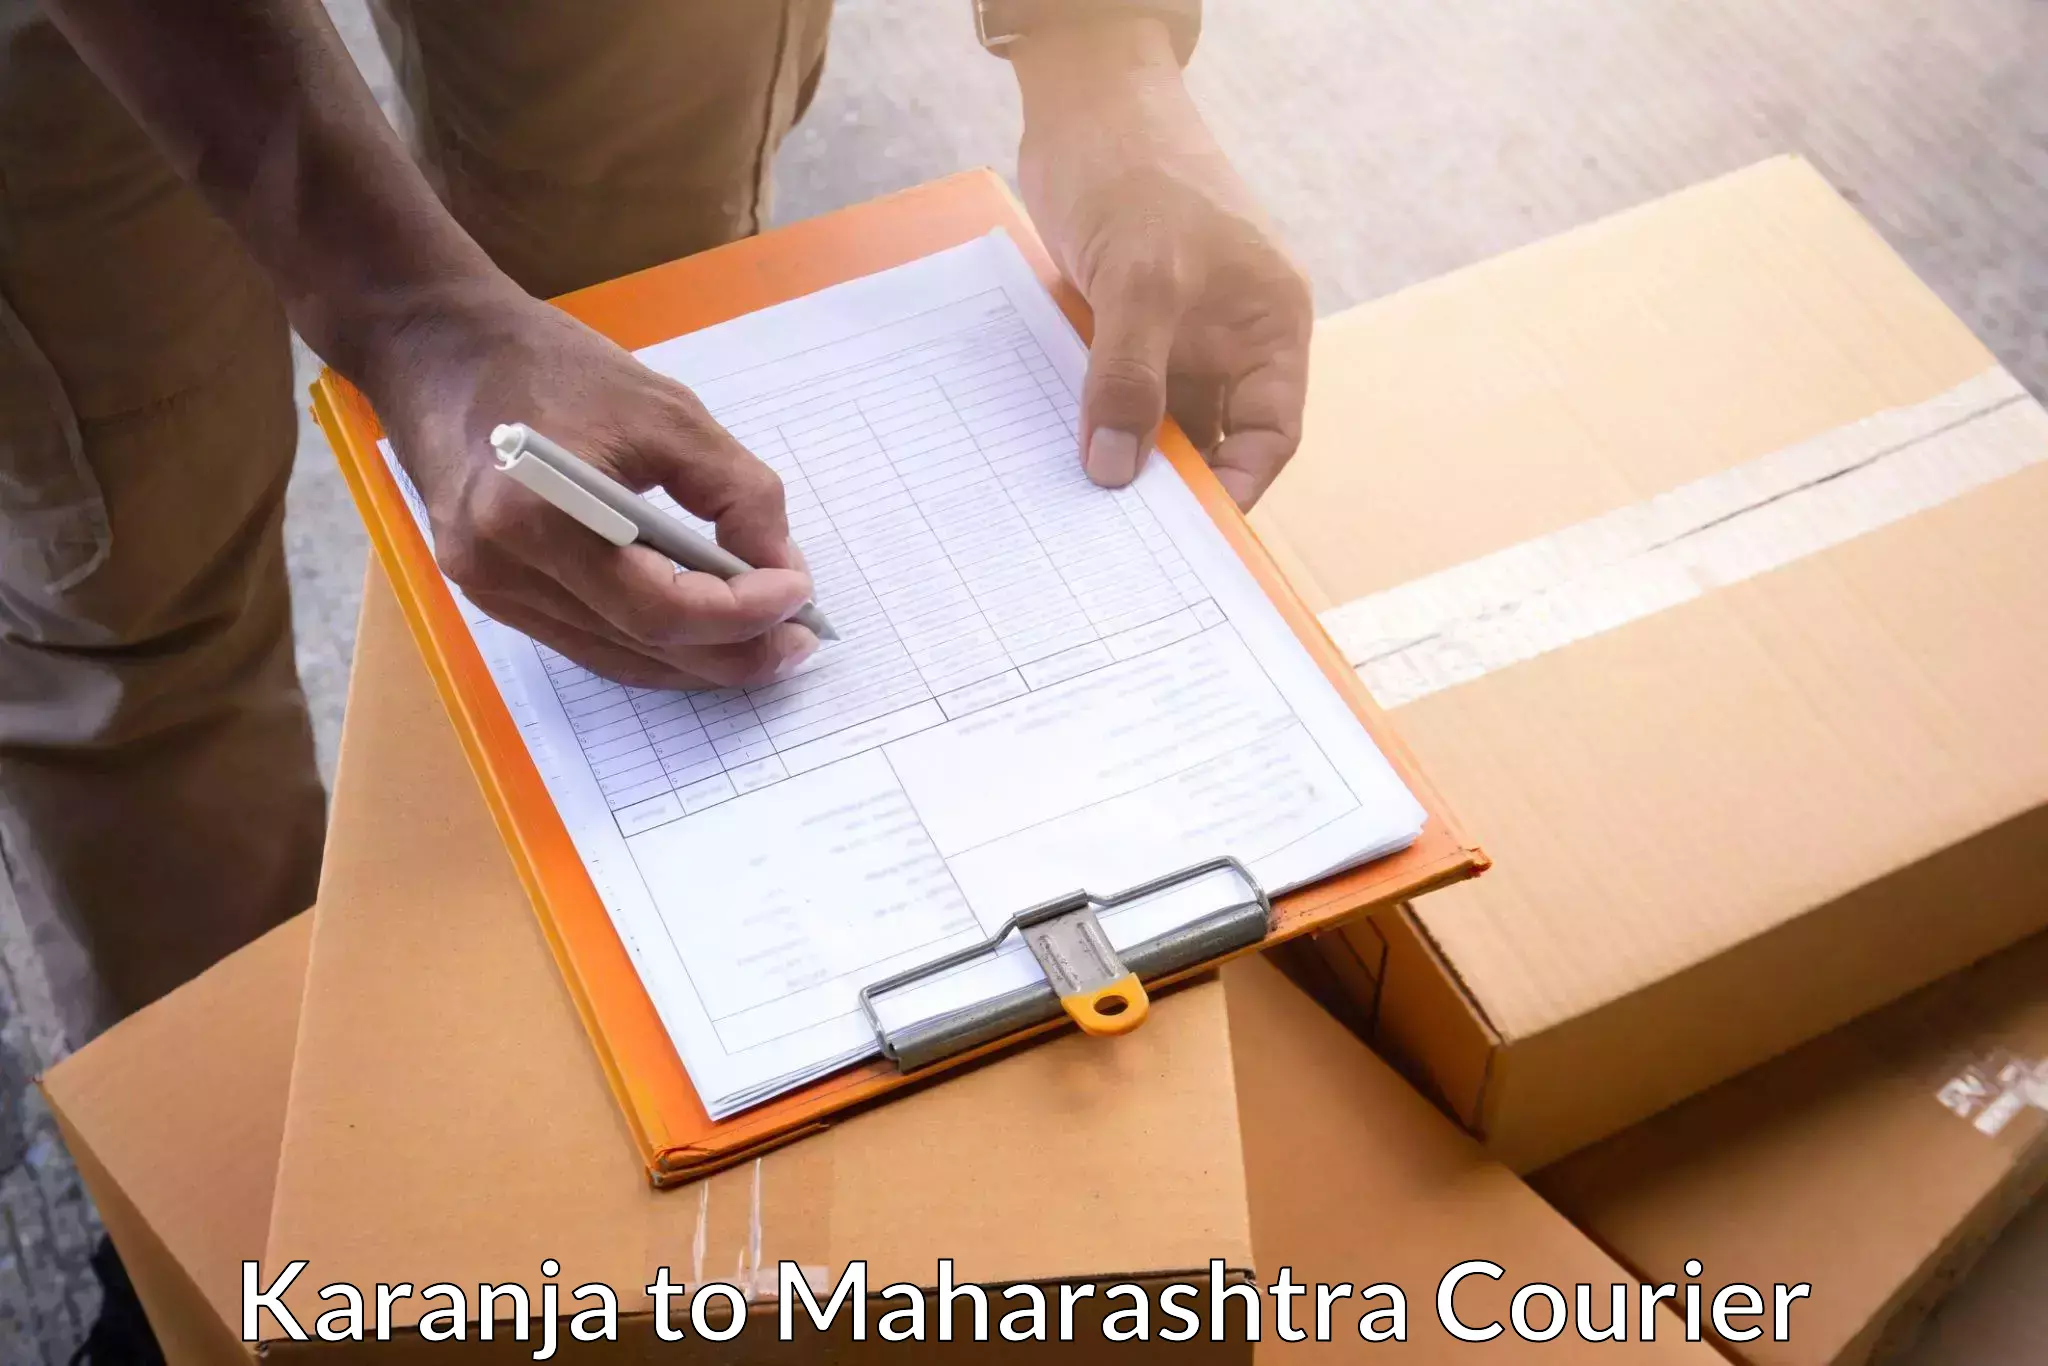 Speedy delivery service Karanja to Mahagaon